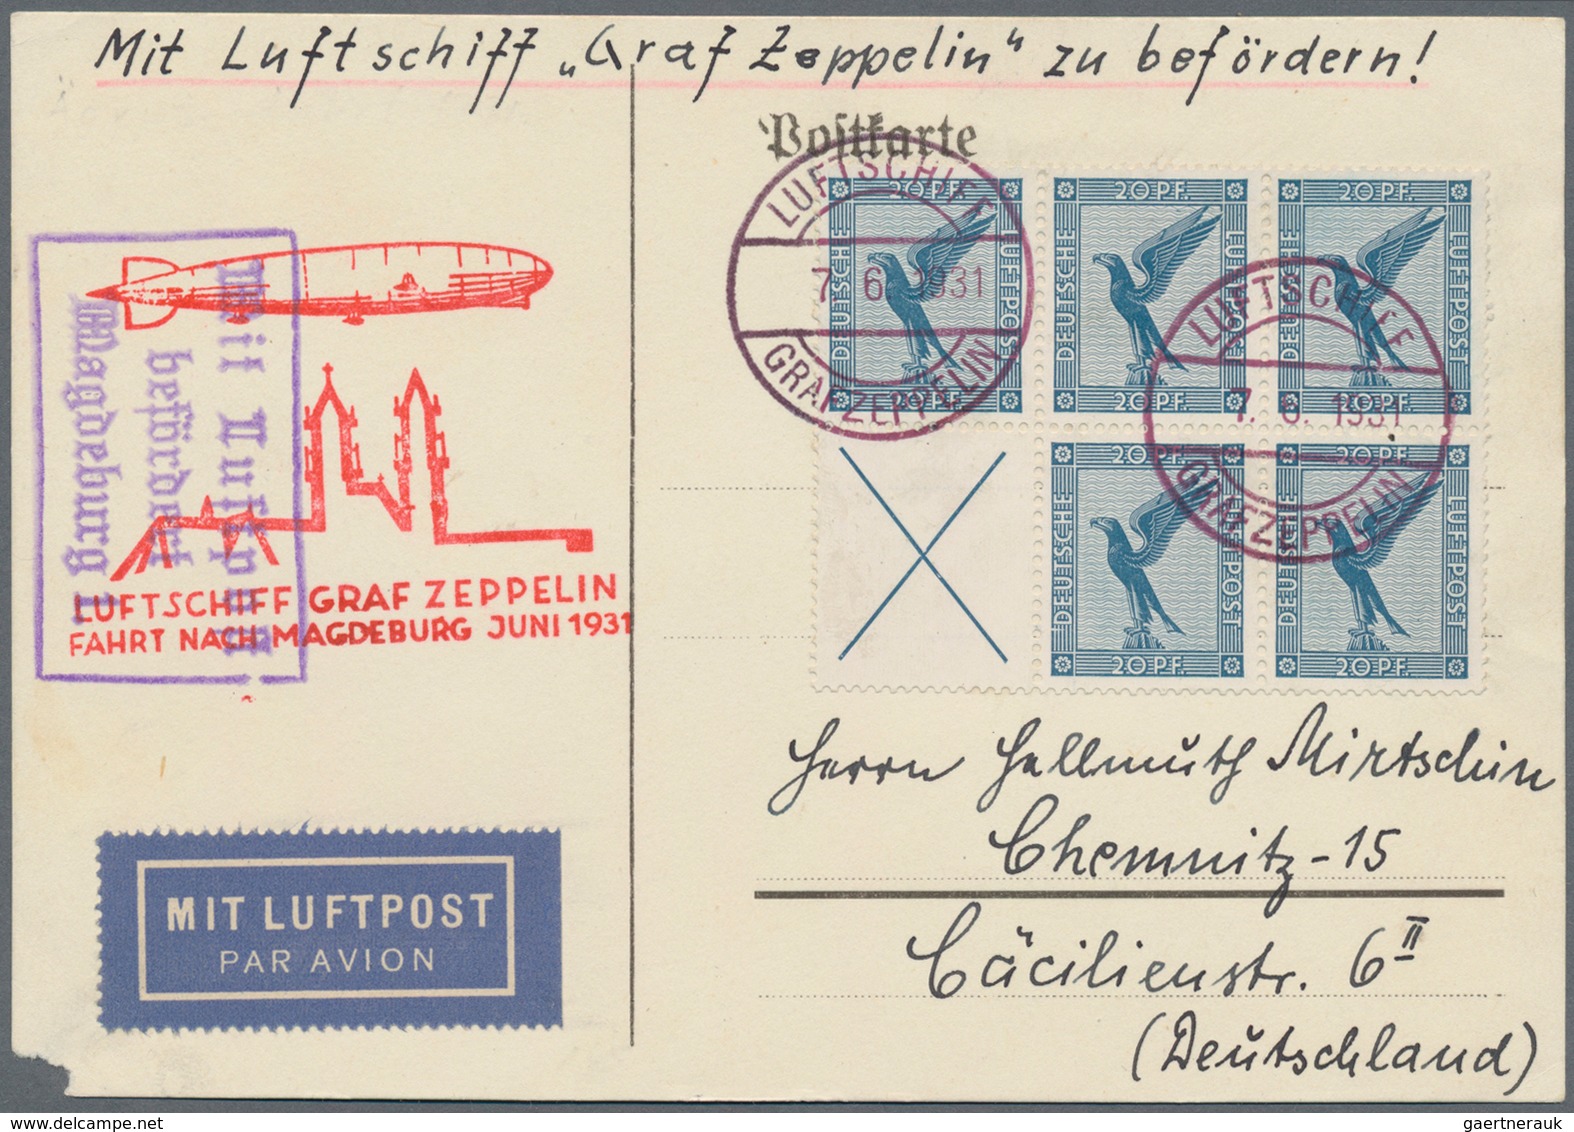 Deutsches Reich - Zusammendrucke: 1931, 5 X 20 Pf Dkl'graublau "Adler" Im 6er-Block Aus Heftchenblat - Se-Tenant